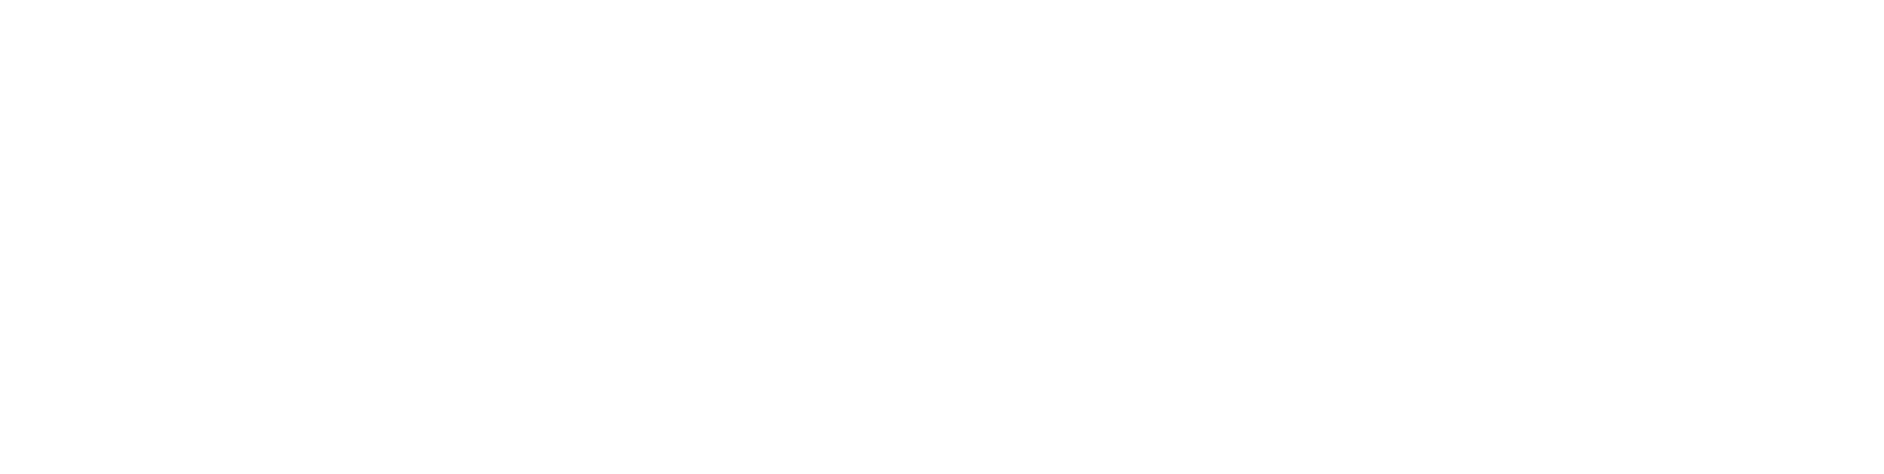 Digital Bros logo large for dark backgrounds (transparent PNG)